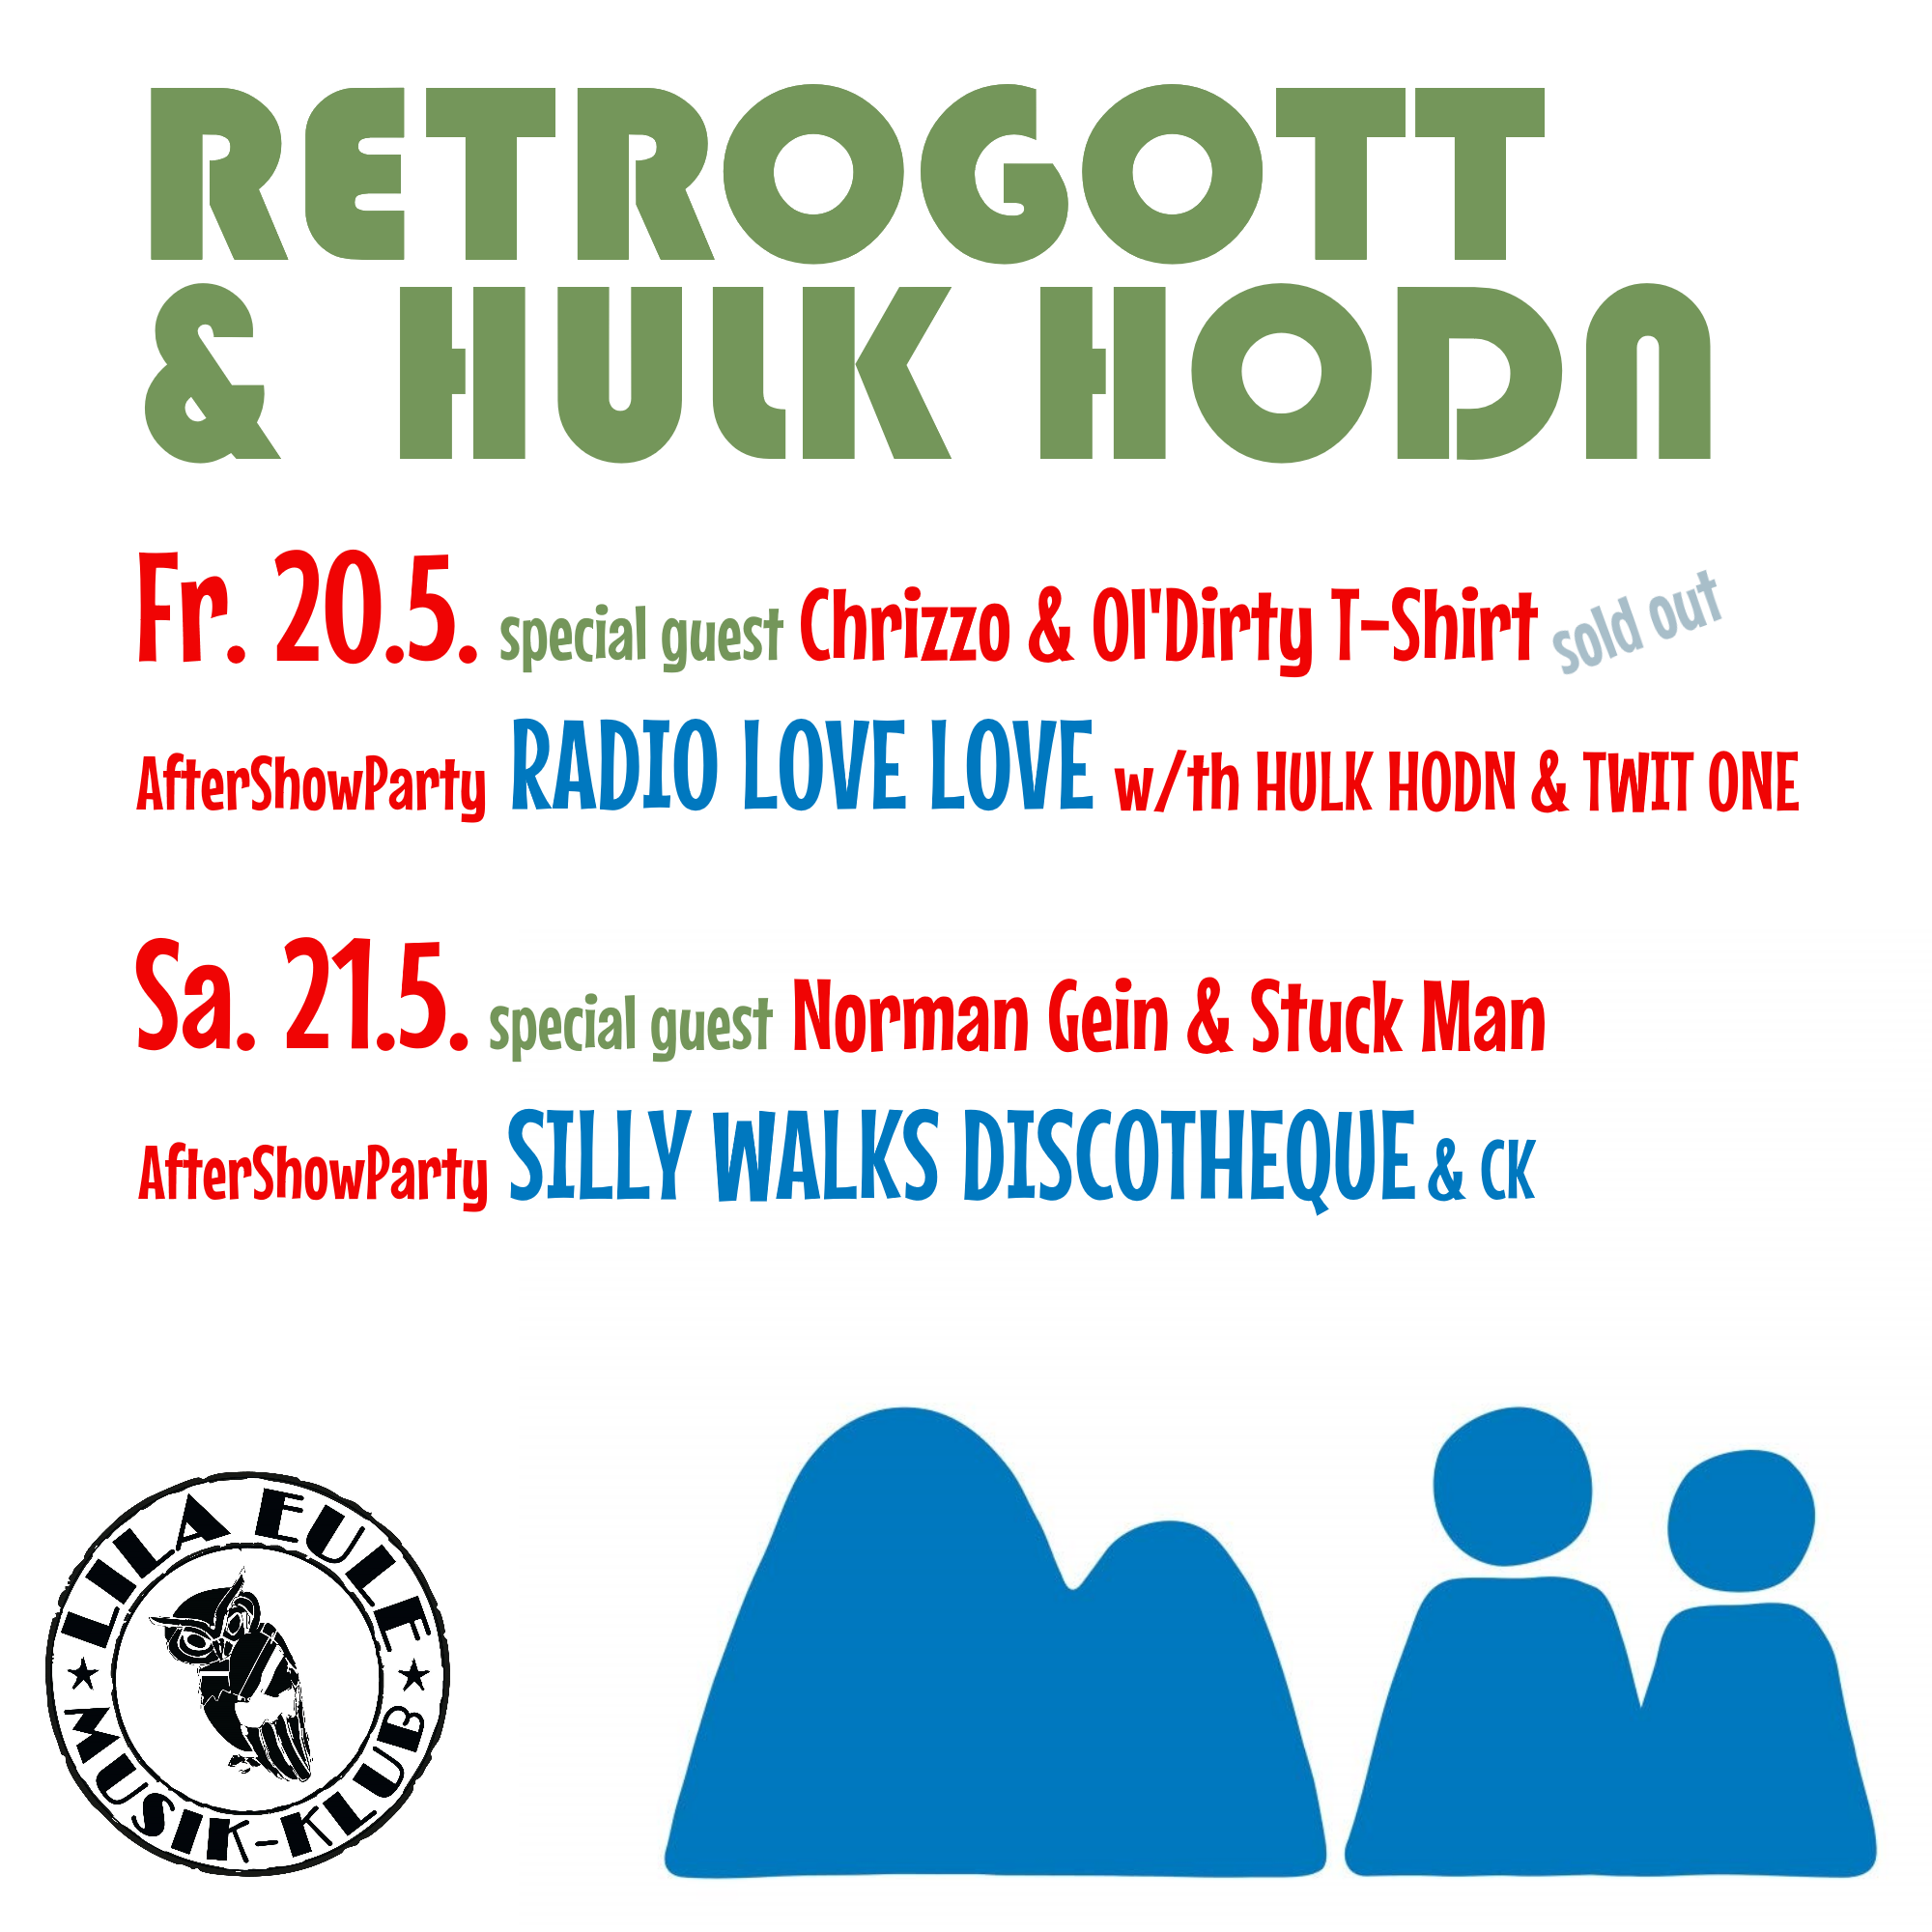 Retrogott & Hulk Hodn